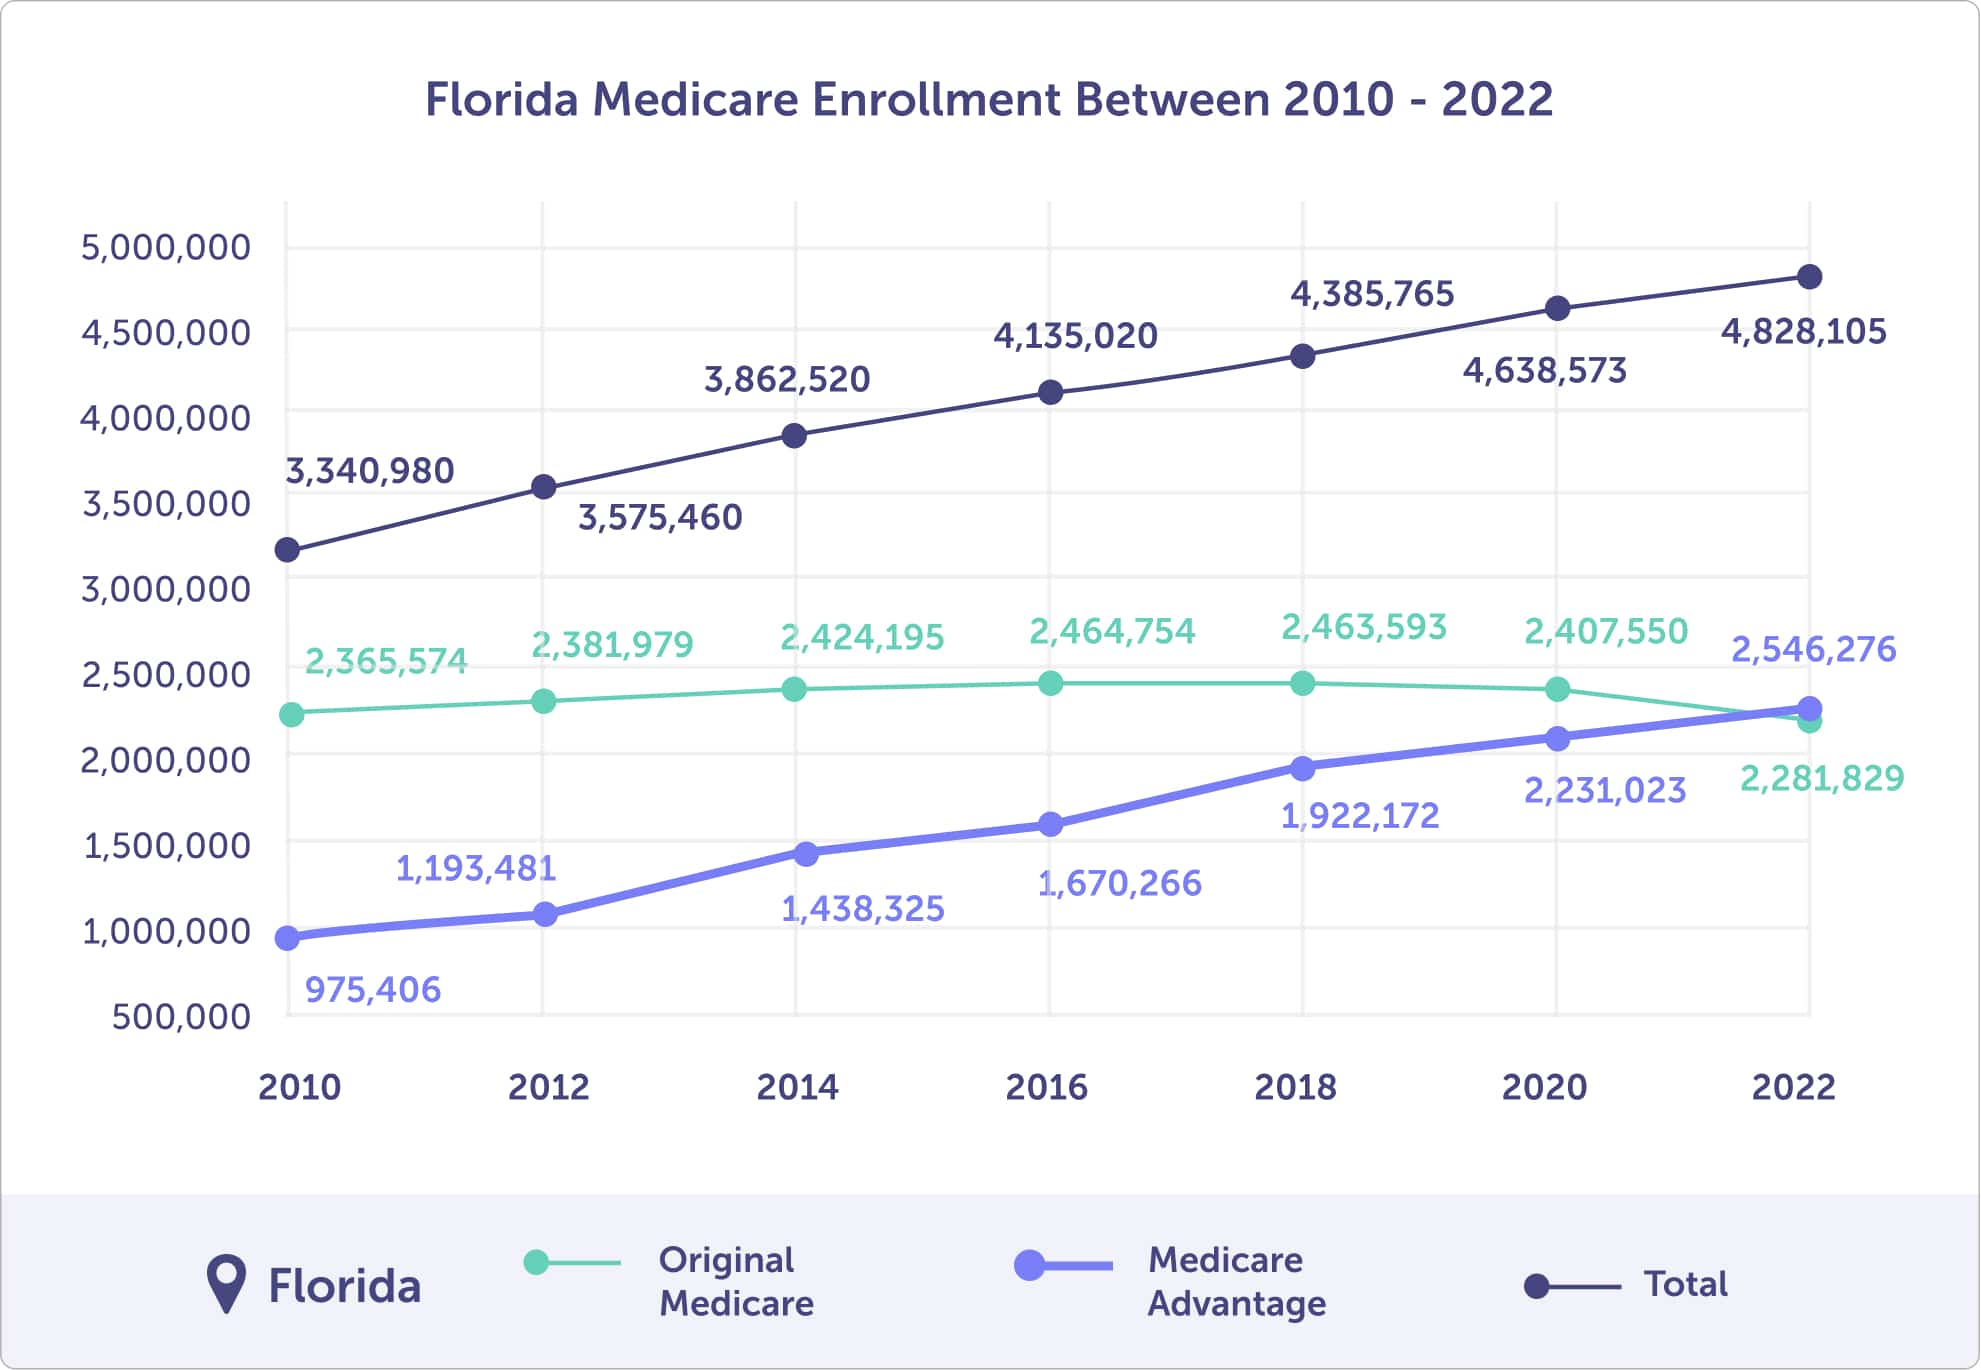 Florida Medicare enrollment between 2010 and 2022